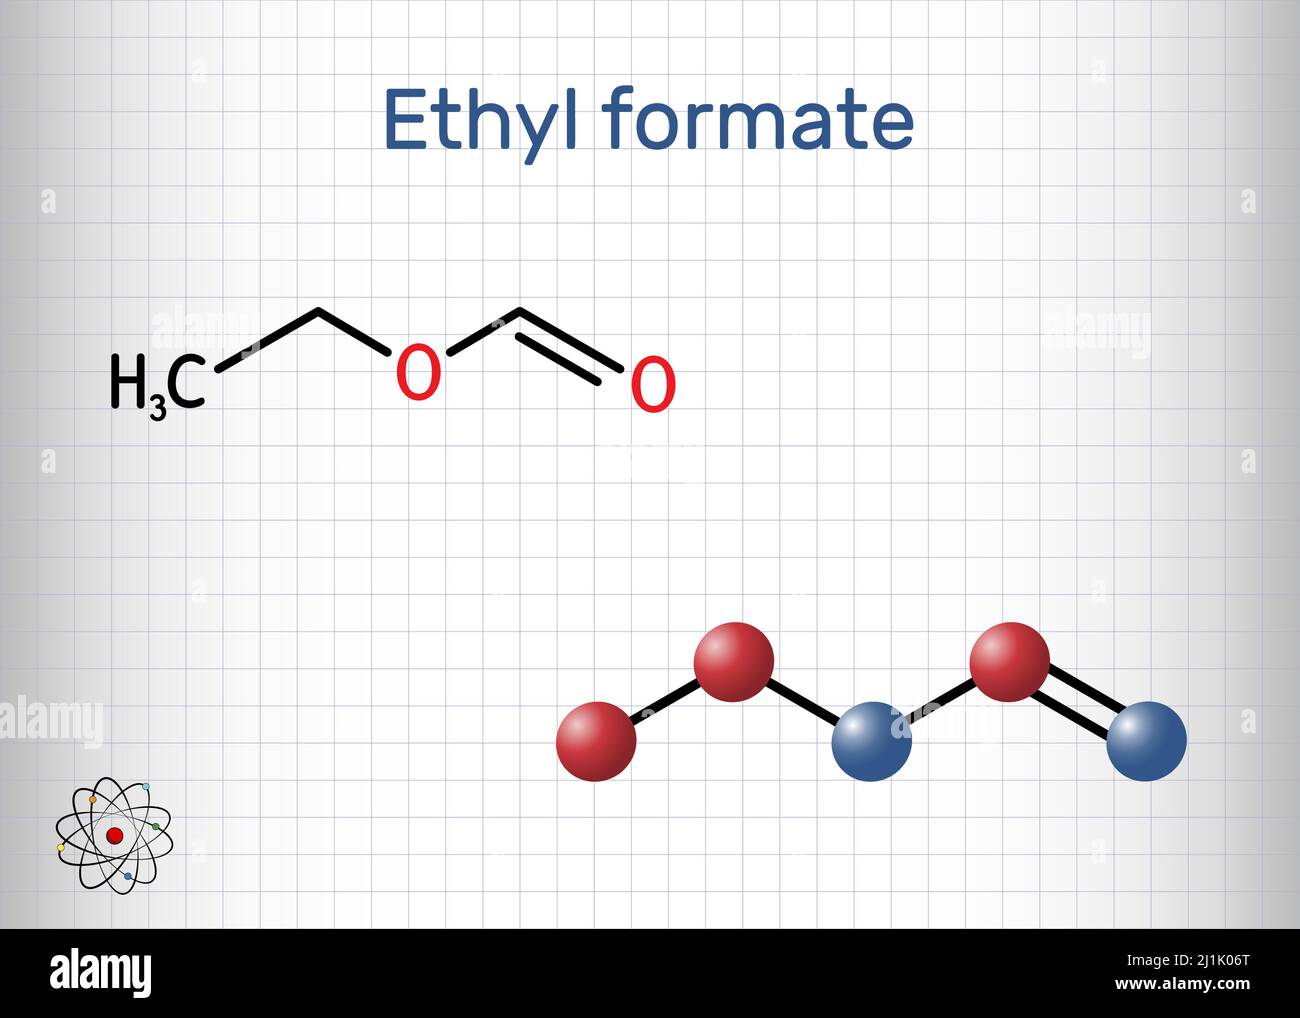 Формиат этил. Этилформиат структурная формула. Молекула этилформиата. Этилметаноат. Молекула эфира.